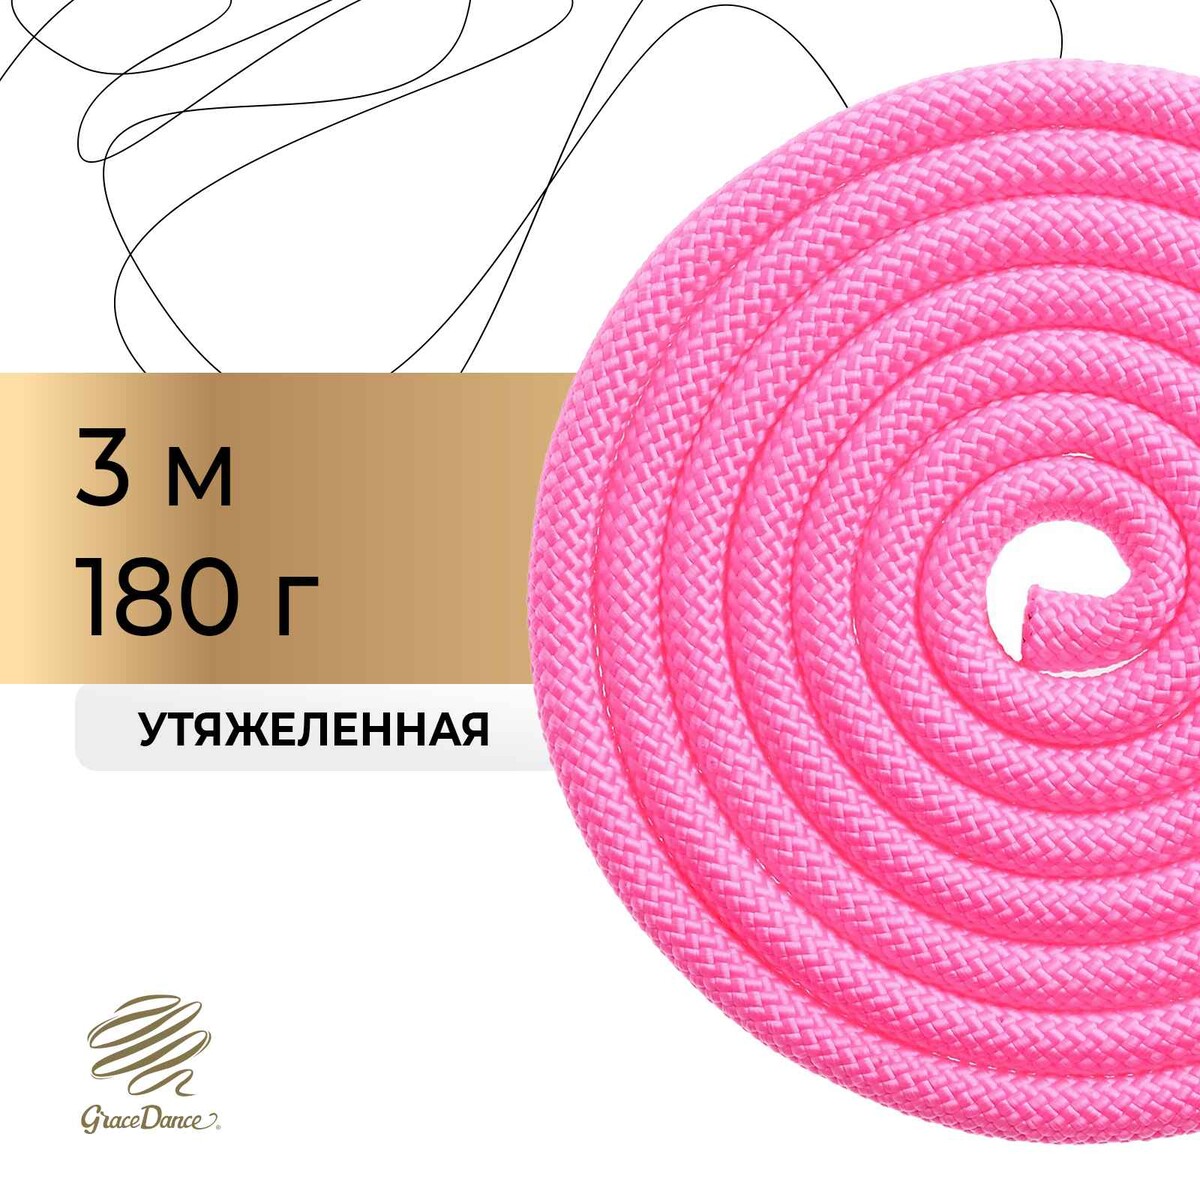 Скакалка для художественной гимнастики утяжеленная grace dance, 3 м, цвет розовый скакалка гимнастическая утяжелённая grace dance с люрексом 2 5 м 150 г неоновый розовый серебристый